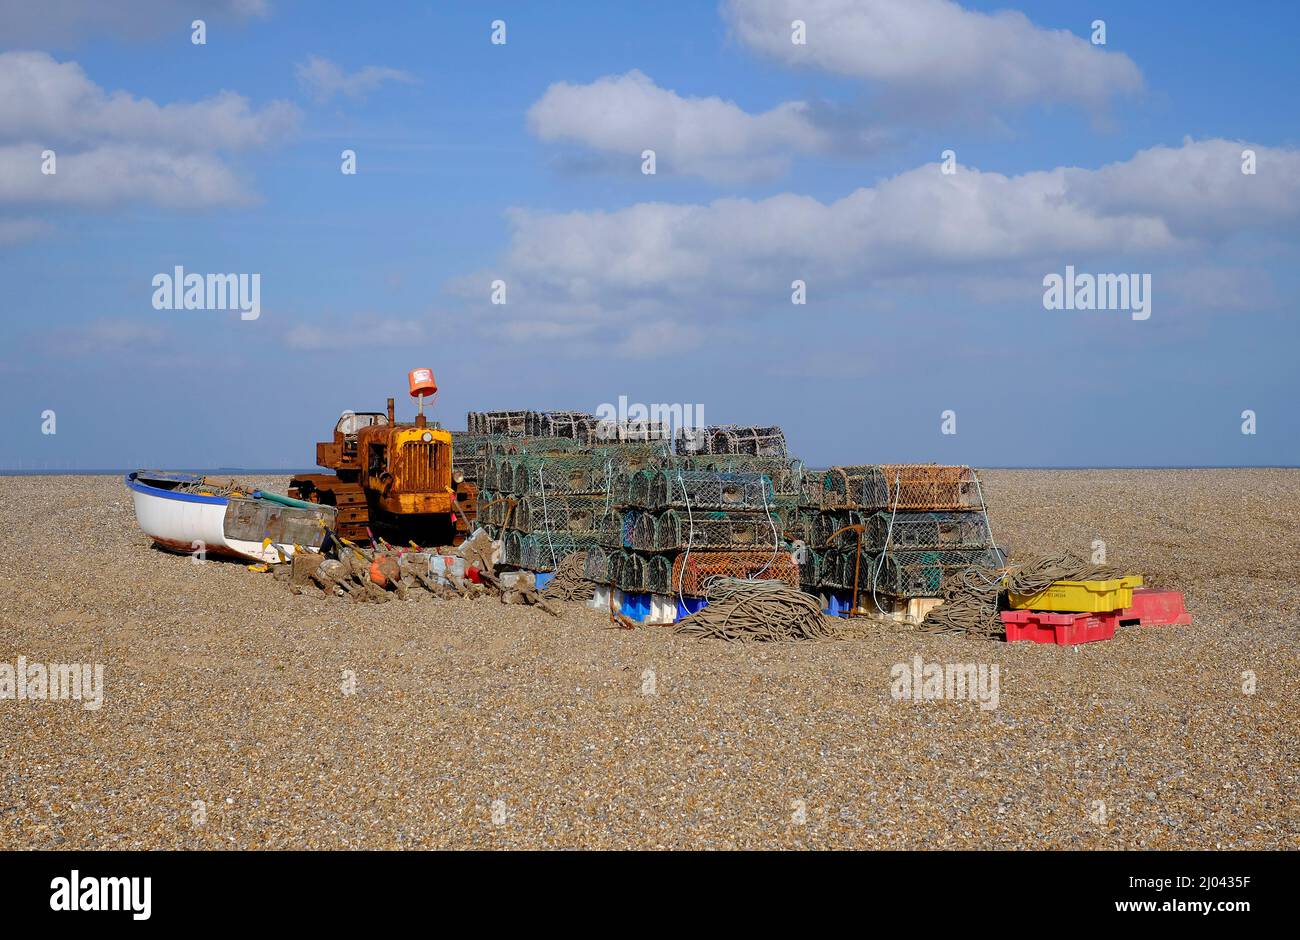 barca da pesca, trattore e vaso di aragosta sulla spiaggia vicino al mare, norfolk nord, inghilterra Foto Stock